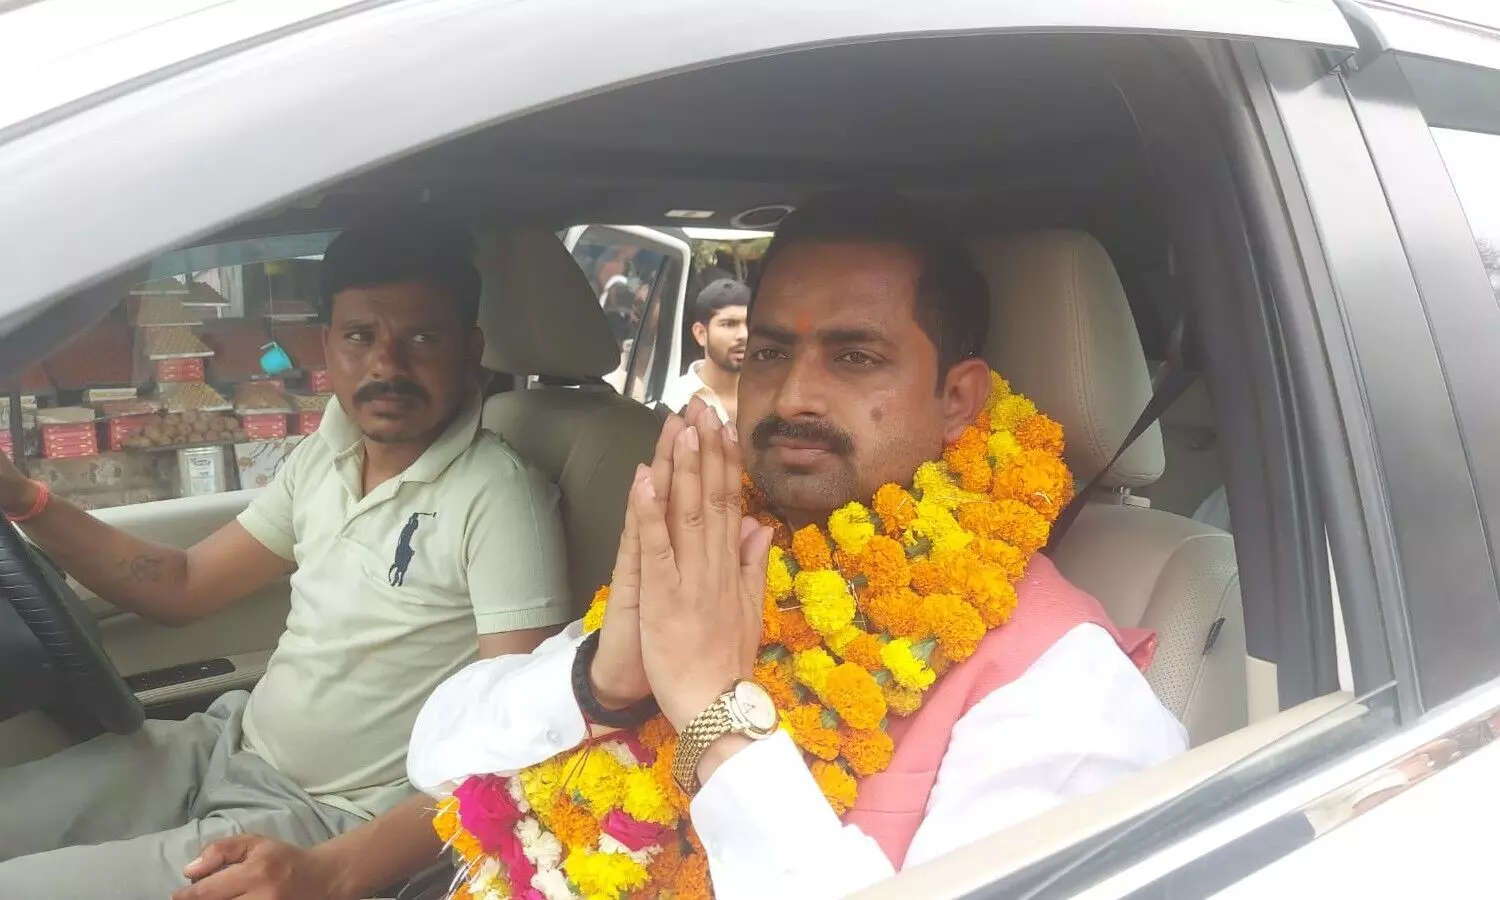 BJP candidate Jitendra Singh Sengar